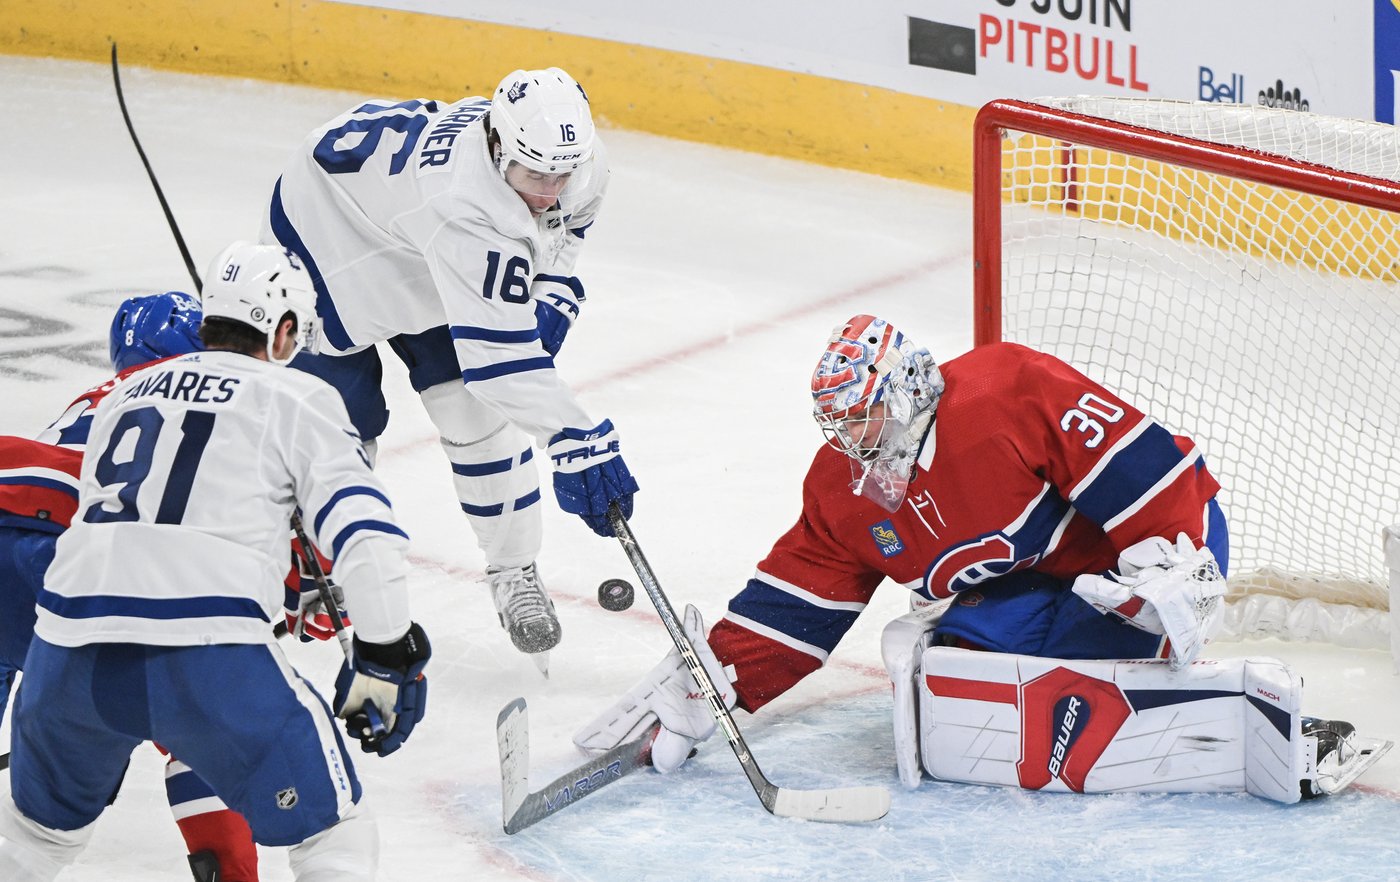 Le Canadien commencera sa saison locale le 9 octobre face aux Maple Leafs